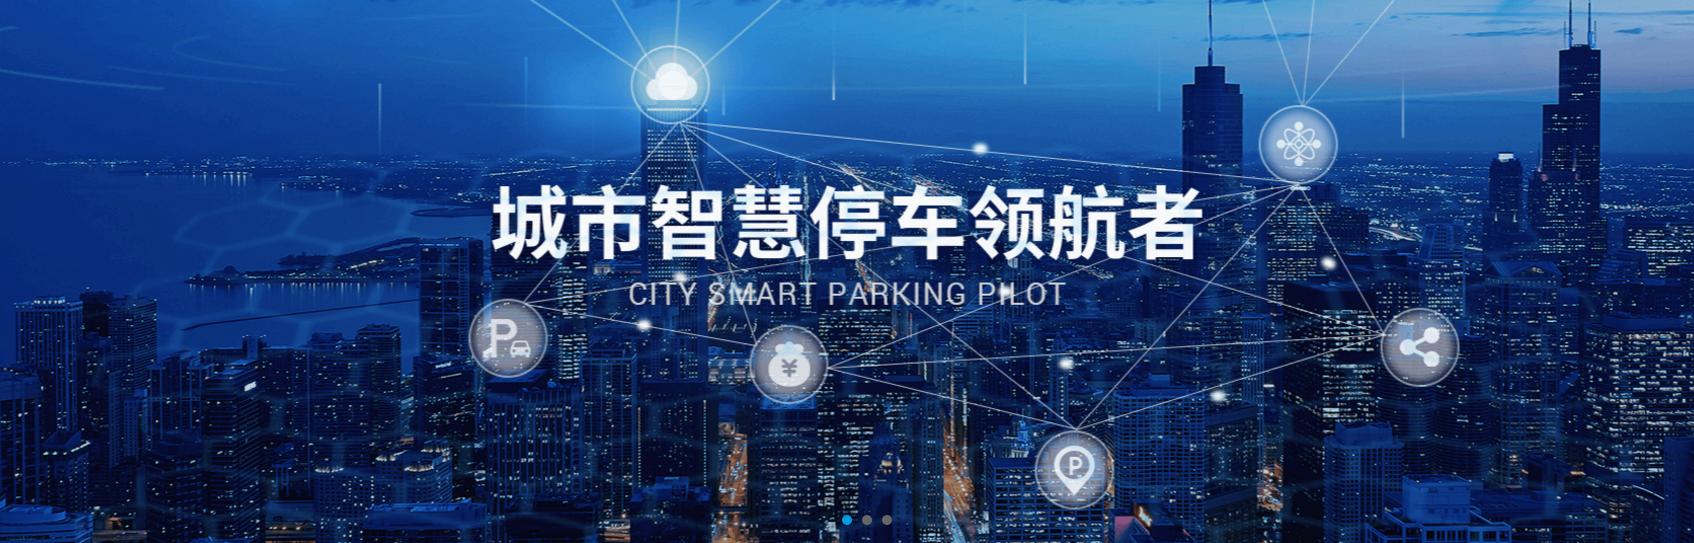 城市智慧停车专家-厦门民望科技亮相“2020北京智博会”